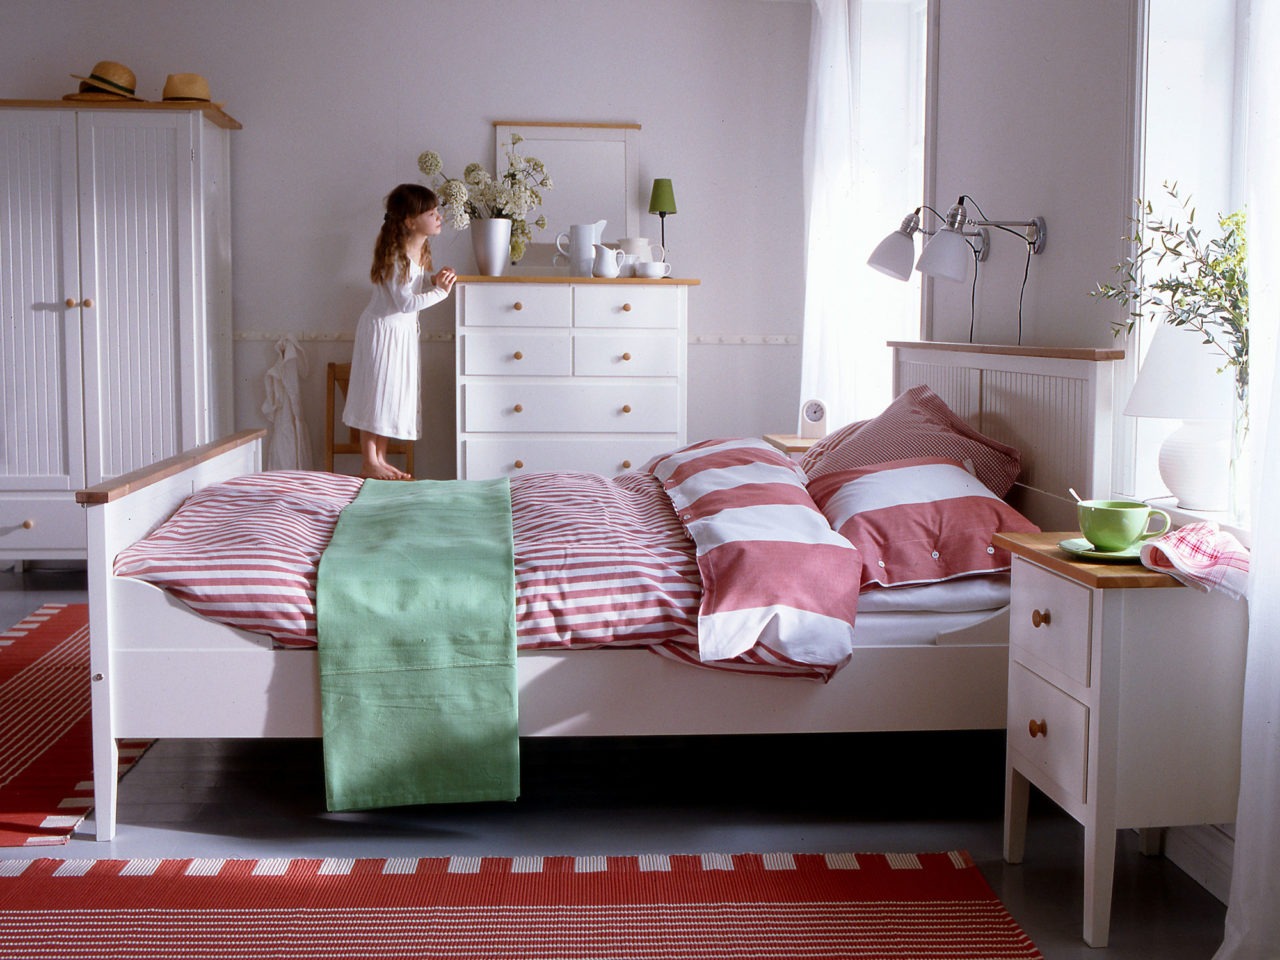 Una chica sobre una silla mira desde un dormitorio con muebles blancos modelo VISDALEN, de estilo rústico moderno.